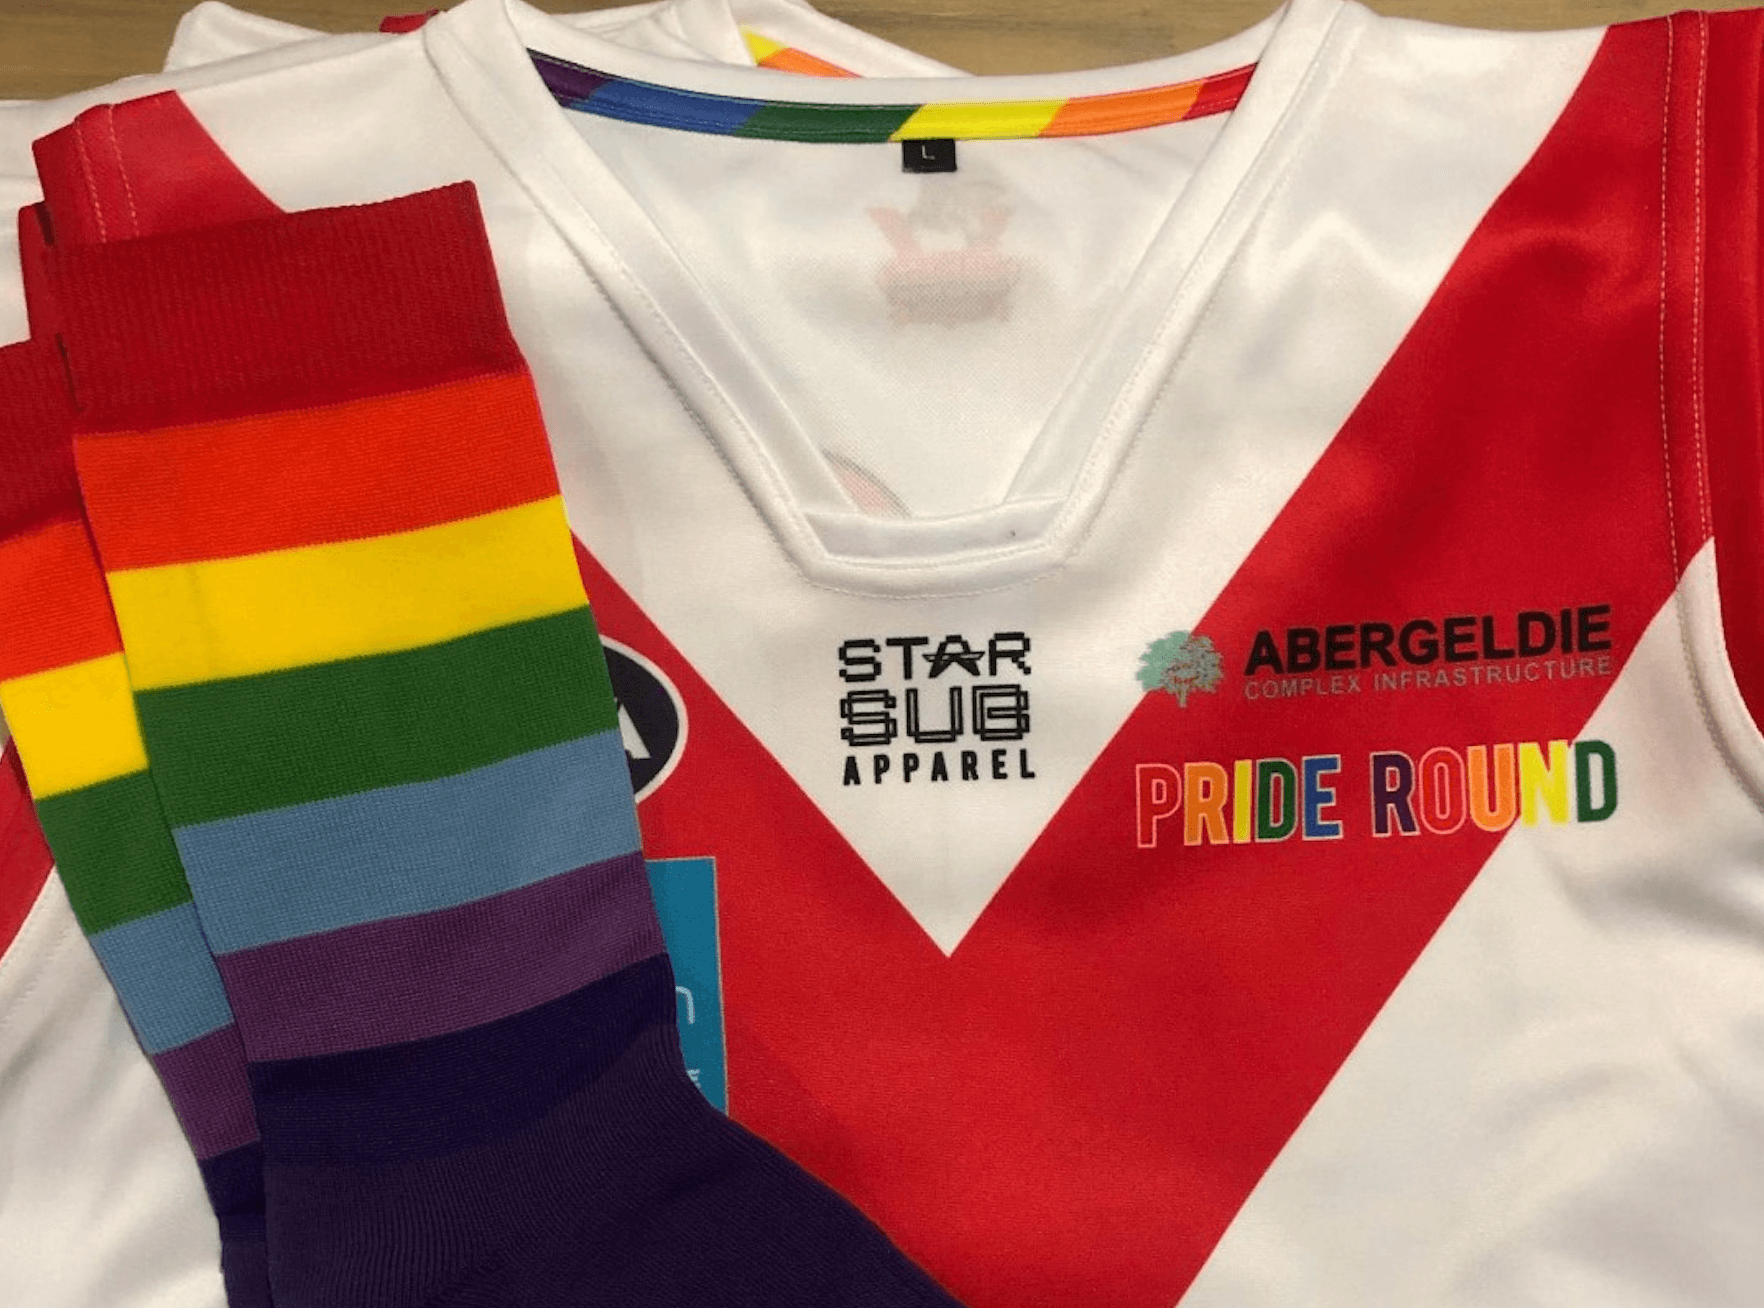 Abergeldie logo shirt in support of LGBTQIA Community